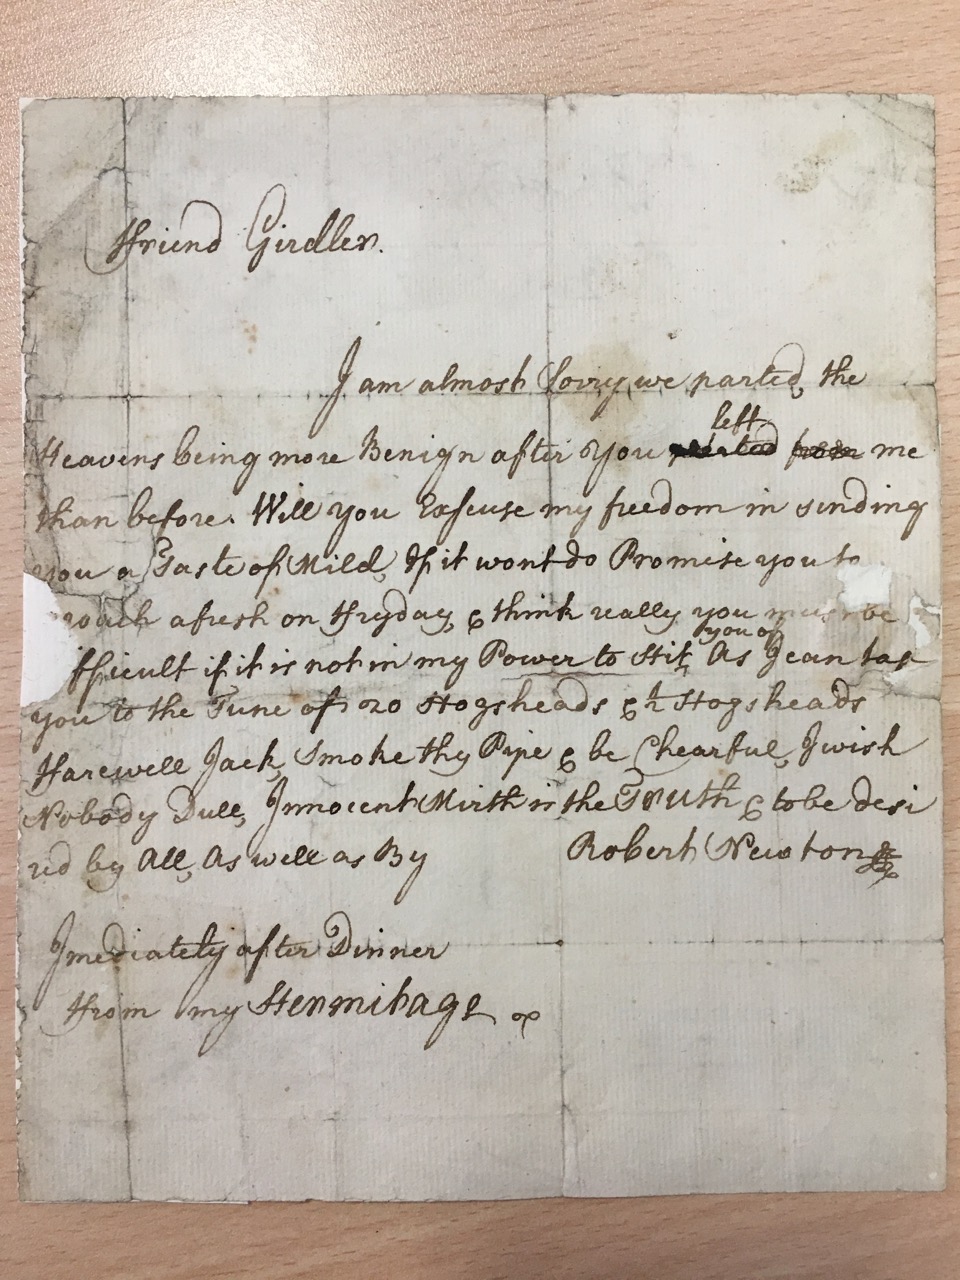 Image #1 of letter: Robert Newton to John Girdler, undated